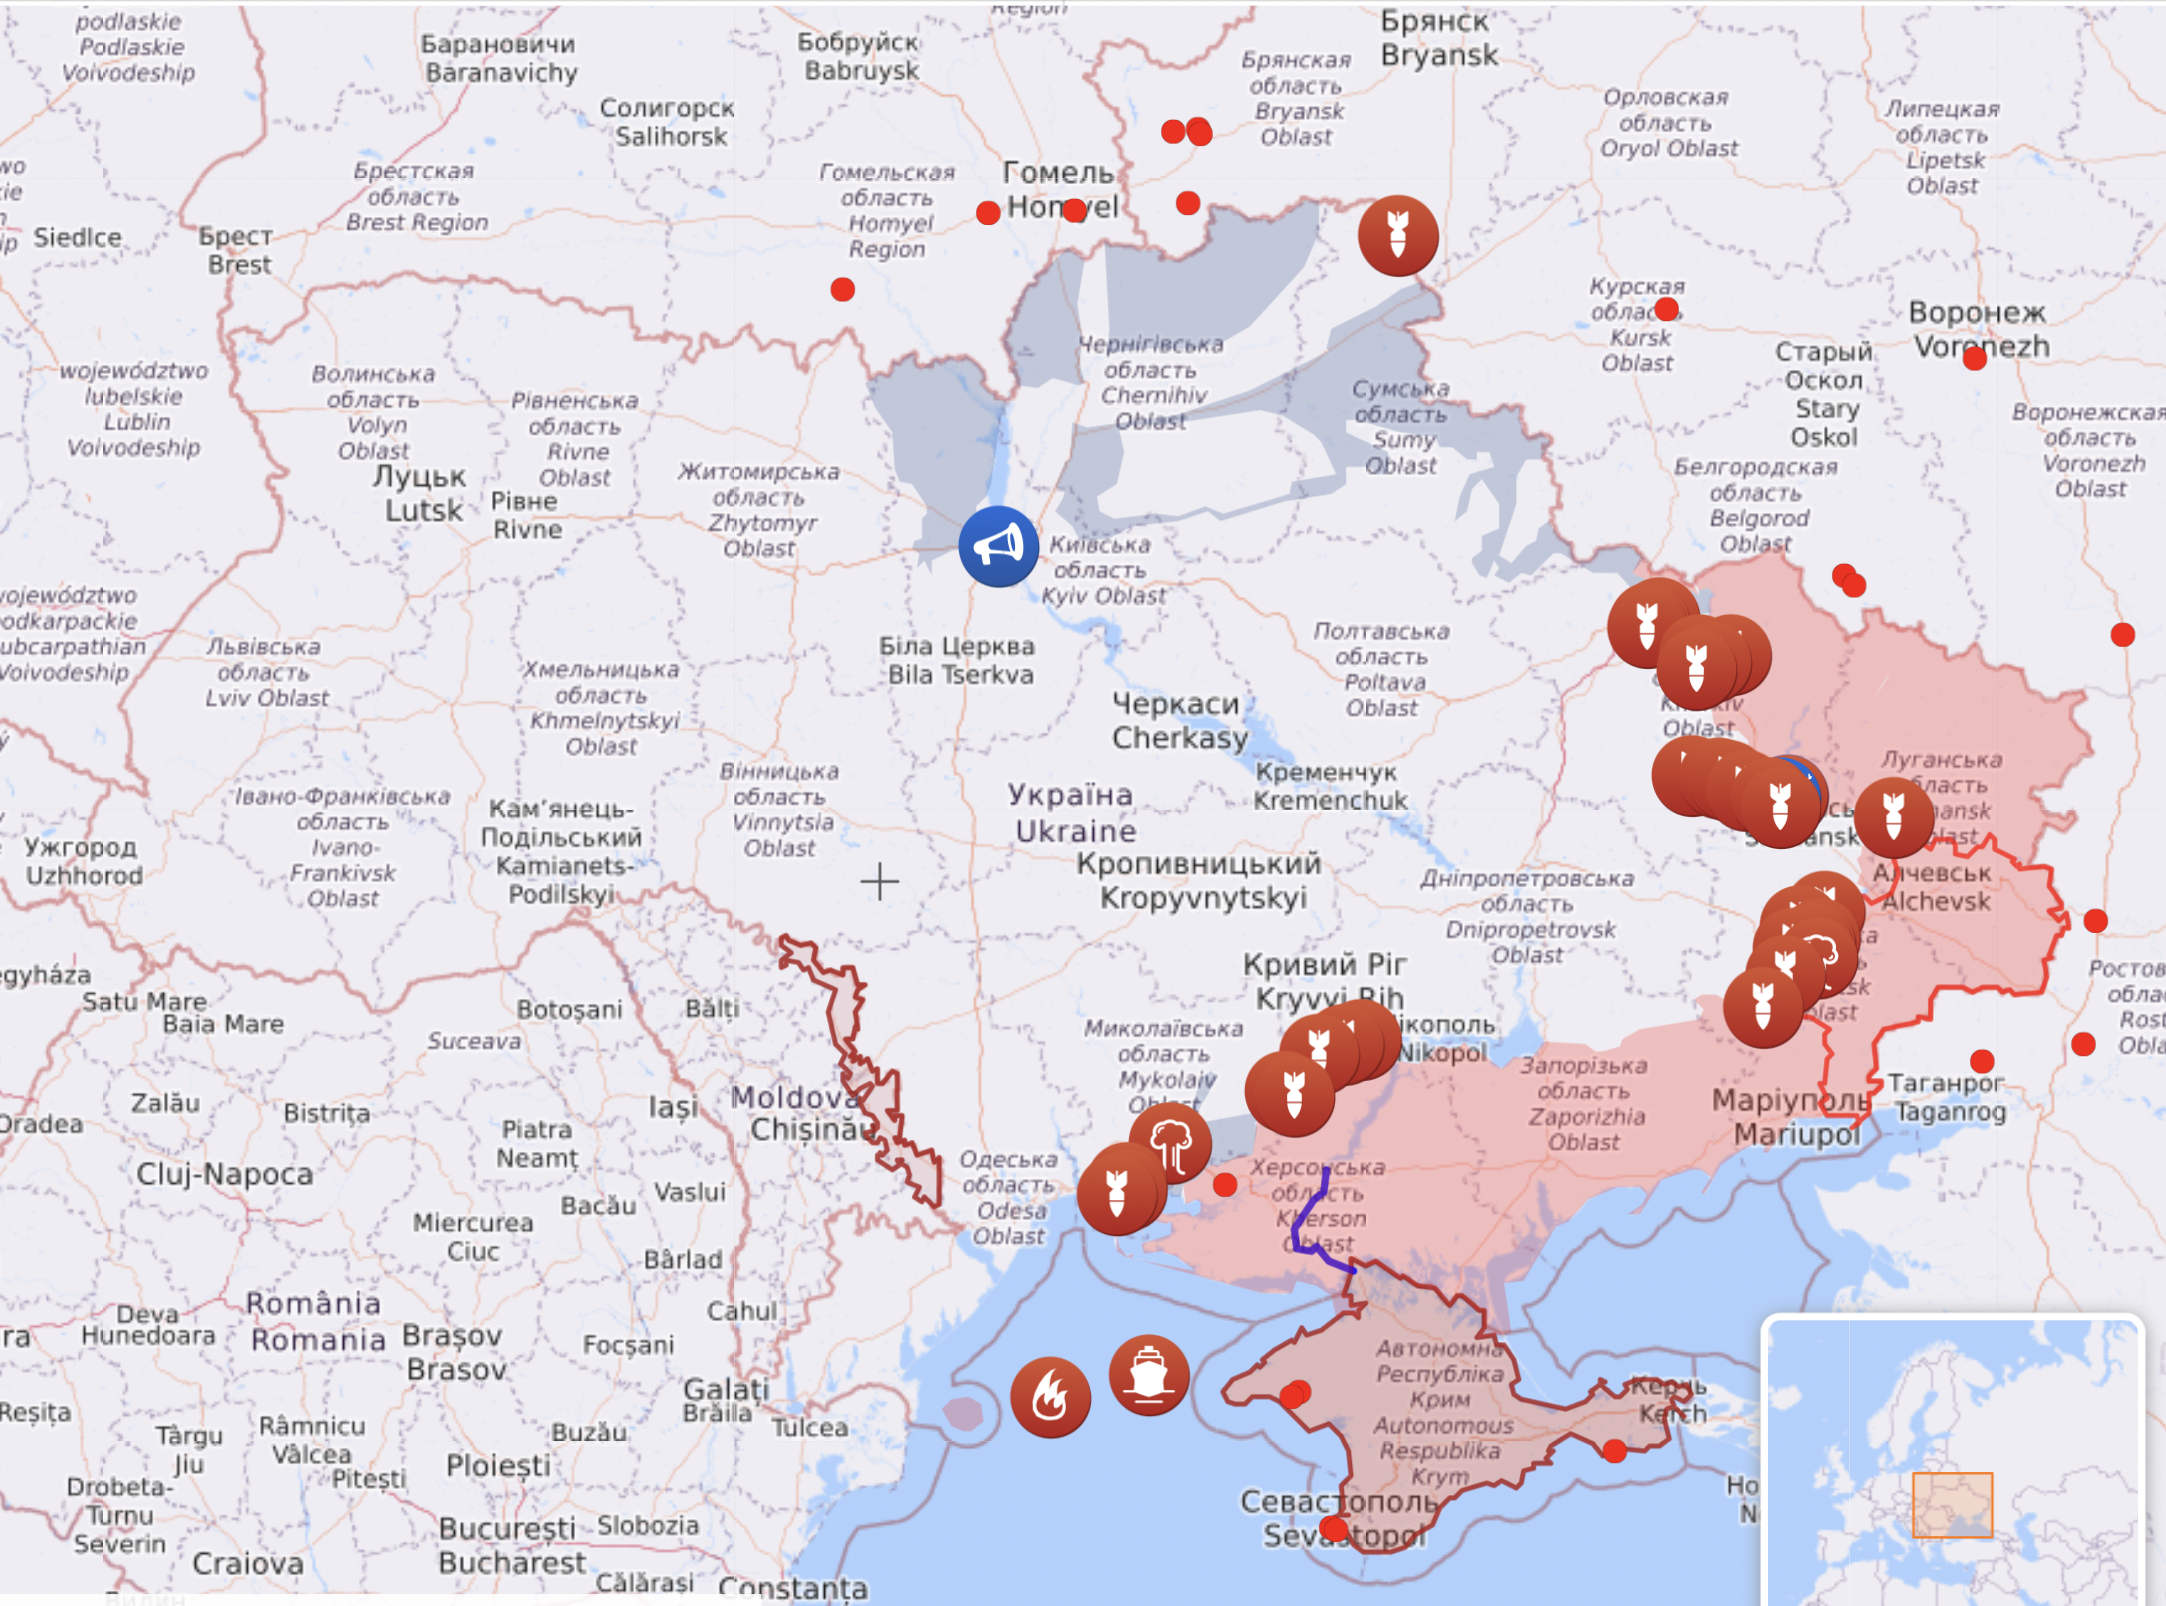 Карта войны в Украине: где идут бои по состоянию на 21 июня